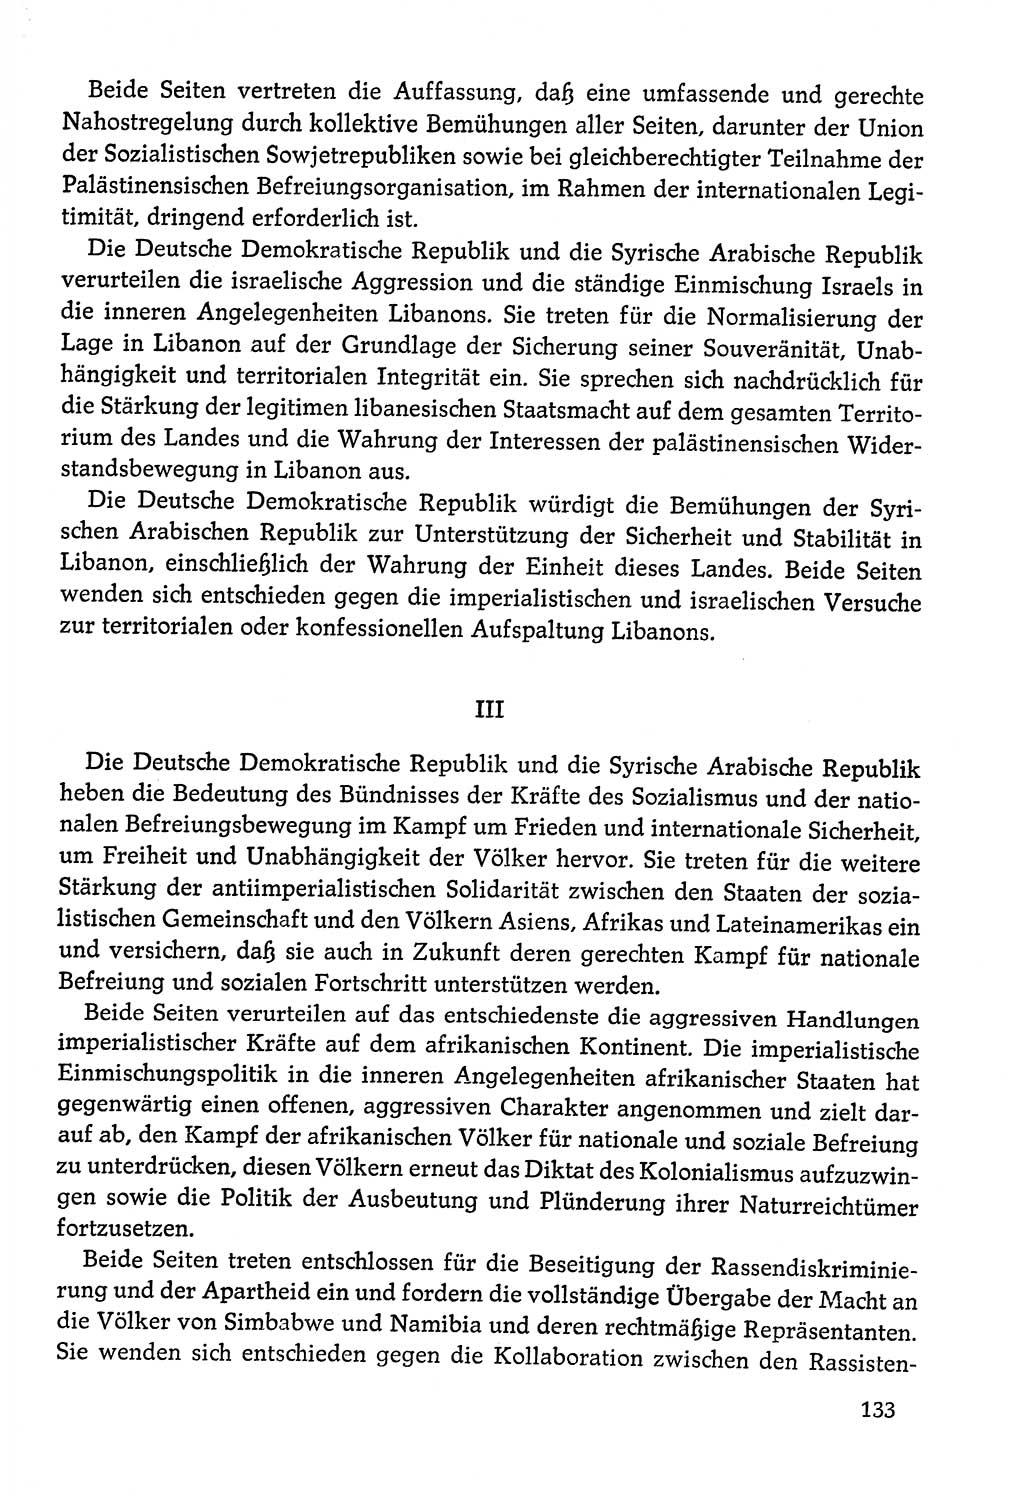 Dokumente der Sozialistischen Einheitspartei Deutschlands (SED) [Deutsche Demokratische Republik (DDR)] 1978-1979, Seite 133 (Dok. SED DDR 1978-1979, S. 133)